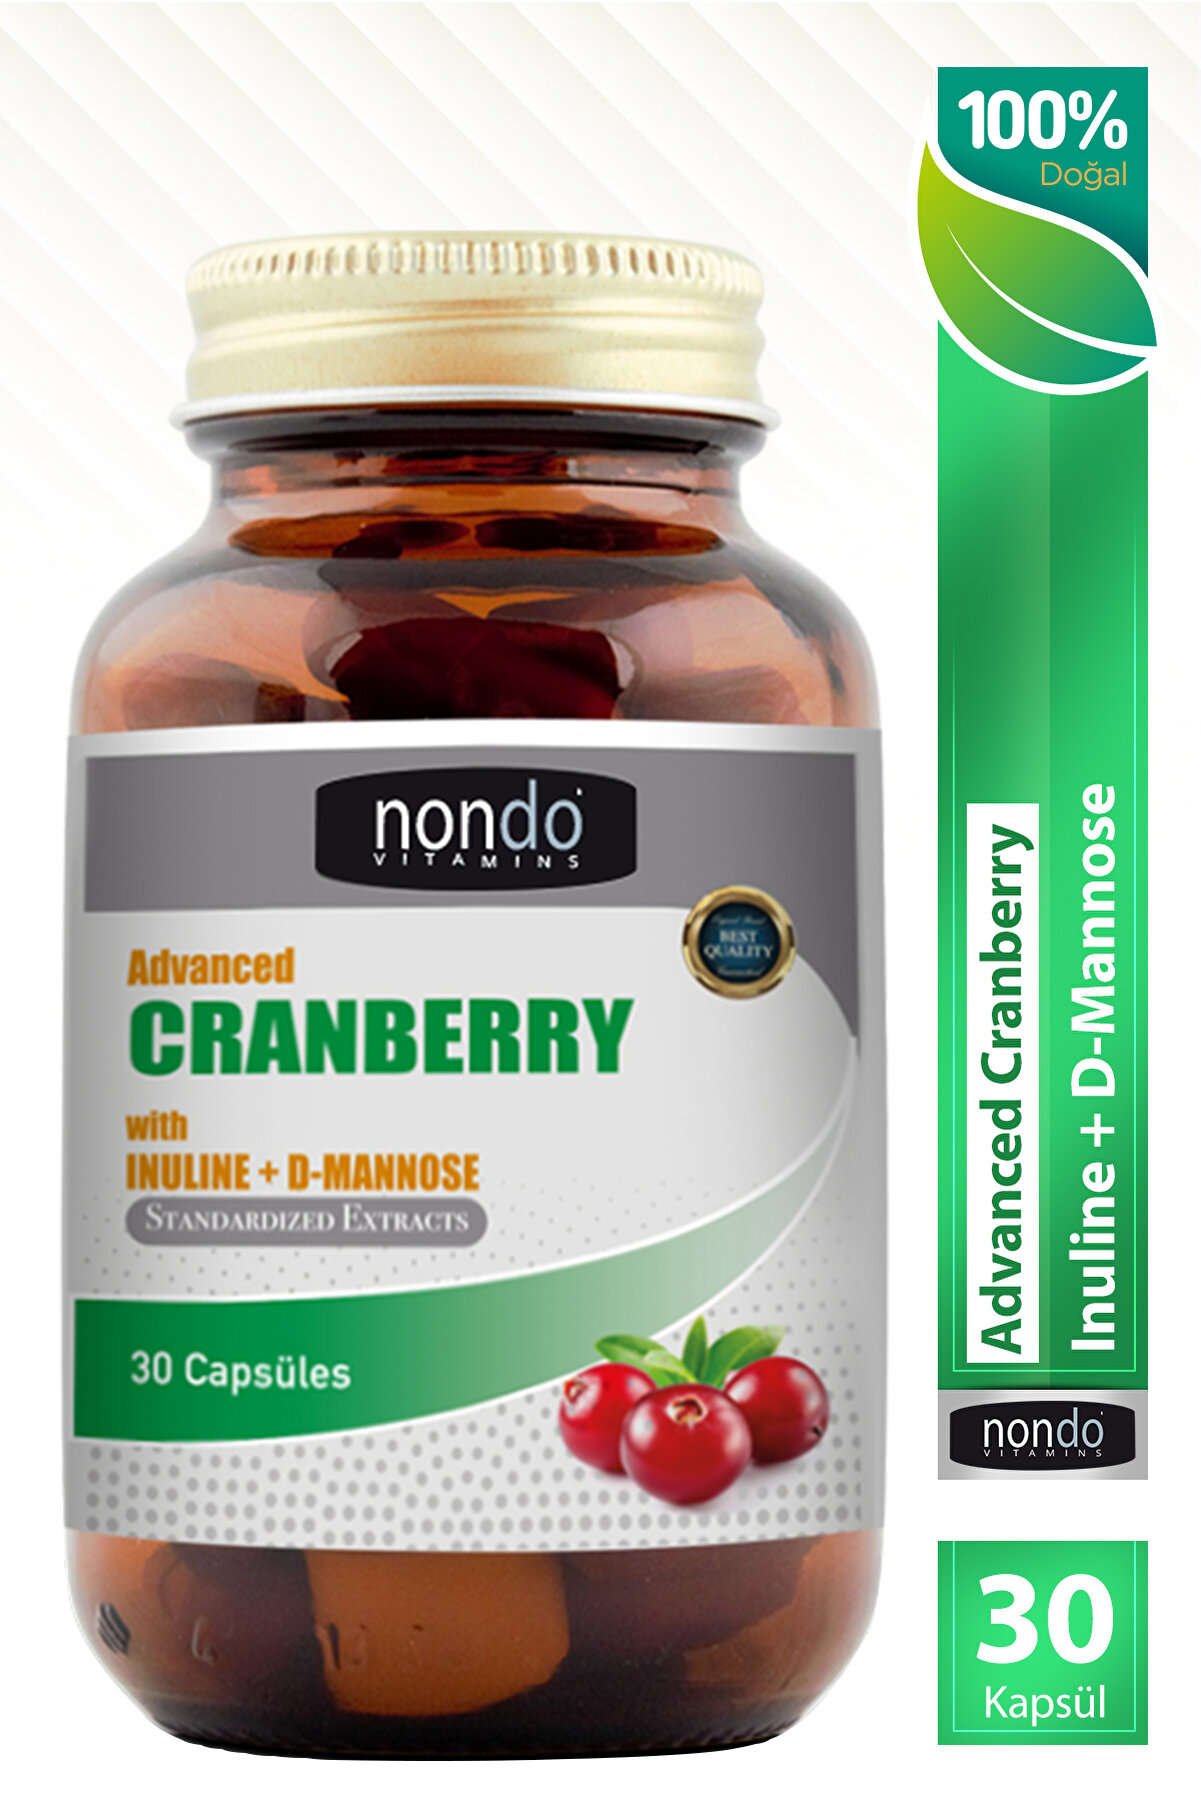 Nondo Advanced Cranberry 30 Kapsül (KIZILCIK EKSTRESİ, İNULİN, D-MANNOSE)